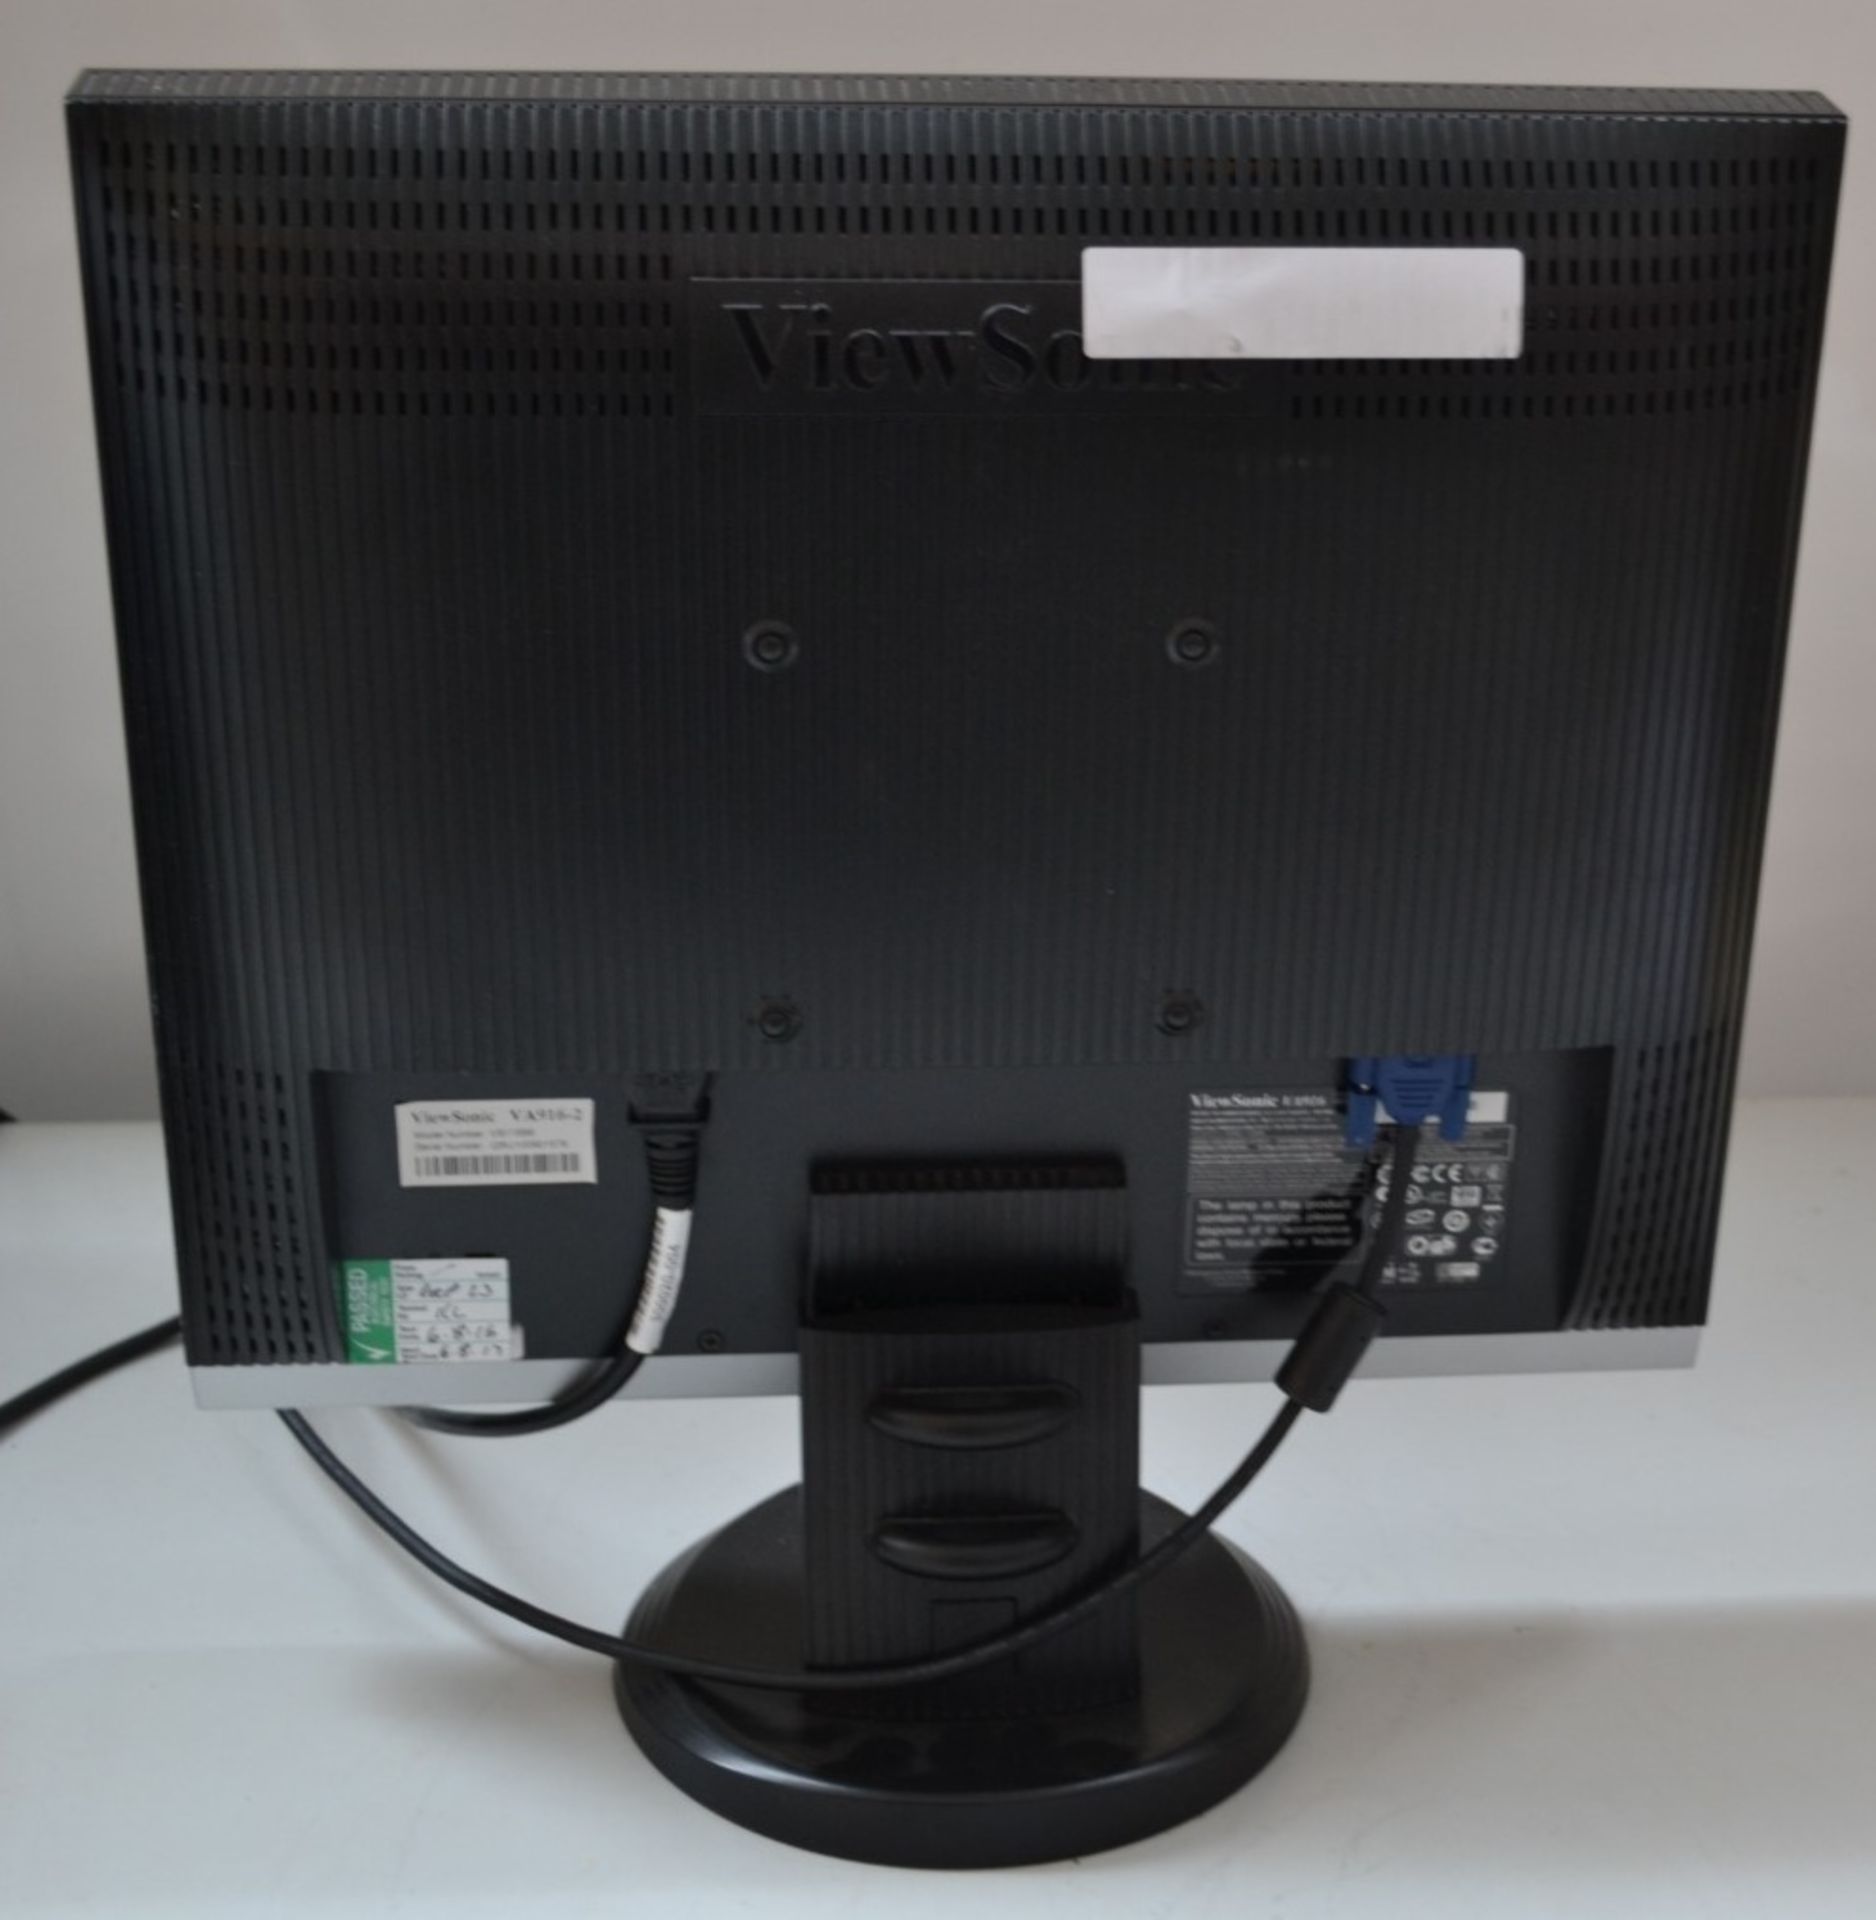 1 x ViewSonic VA916 19" LCD PC Monitor - Ref J2239 - Image 3 of 3